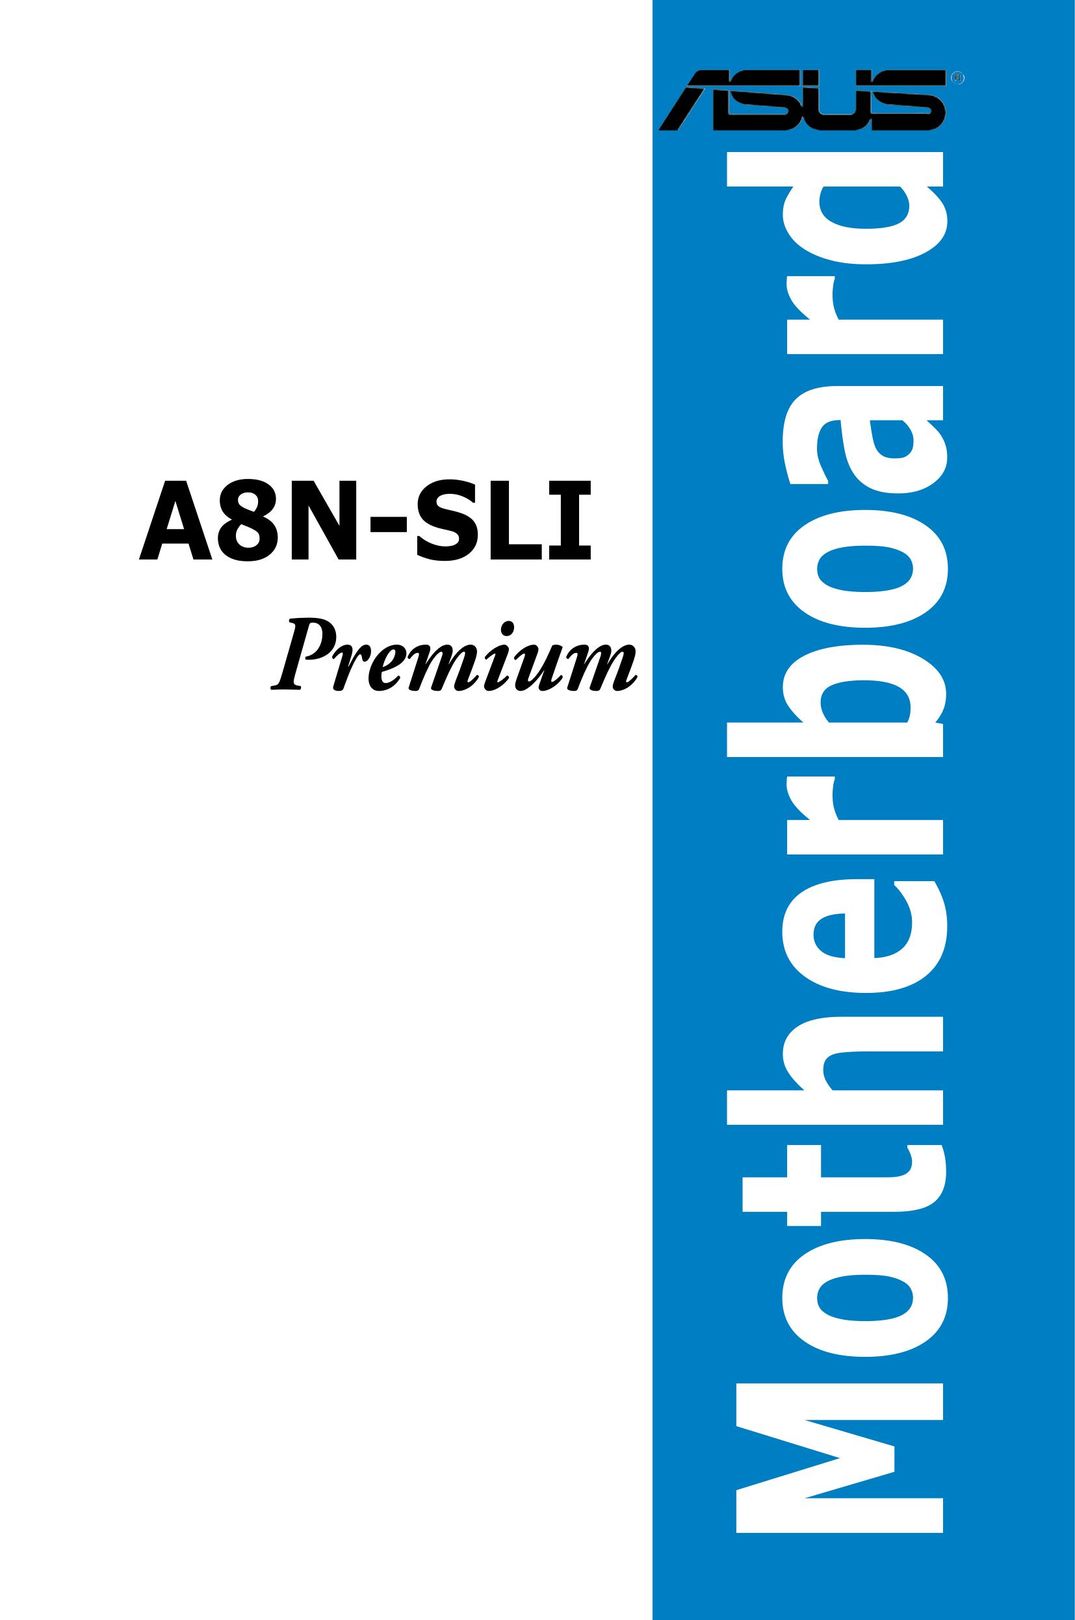 Asus A8N-SLI Premium Personal Computer User Manual